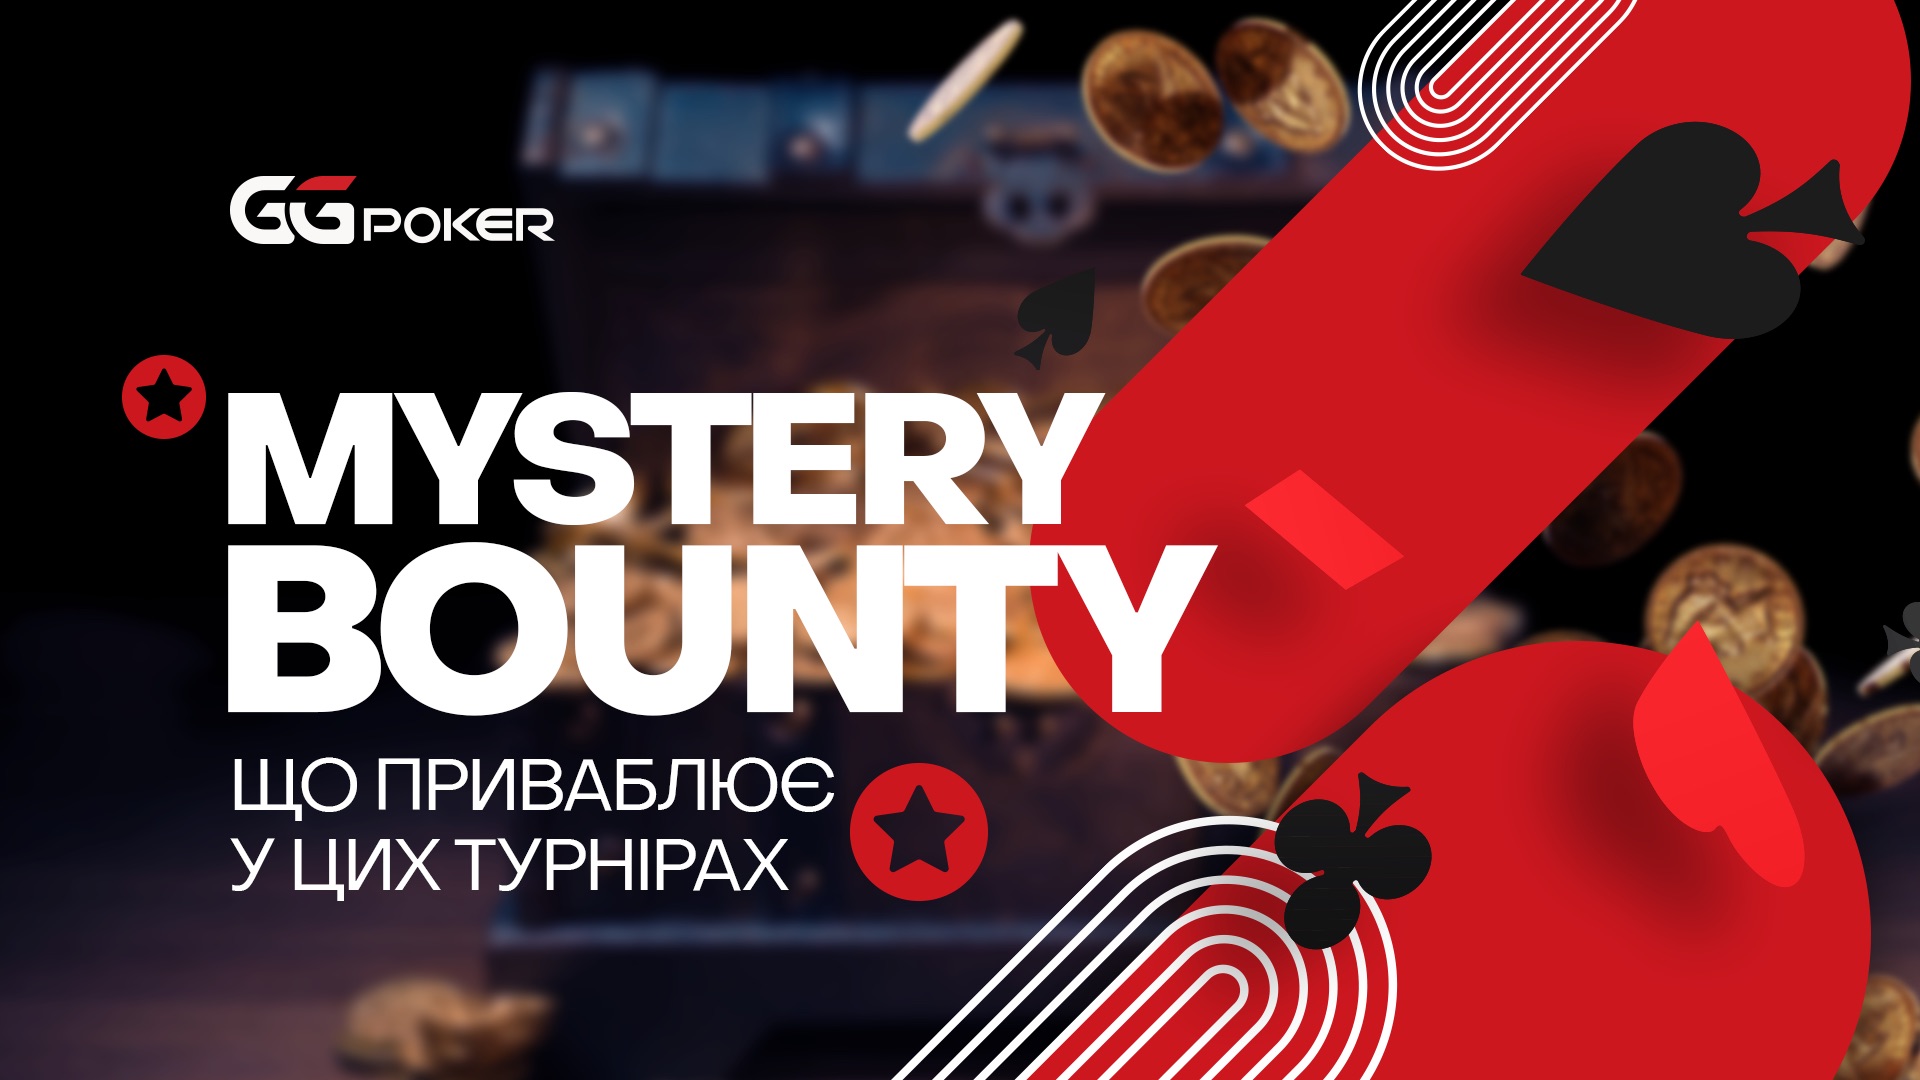 Mystery Bounty: що приваблює у цих турнірах